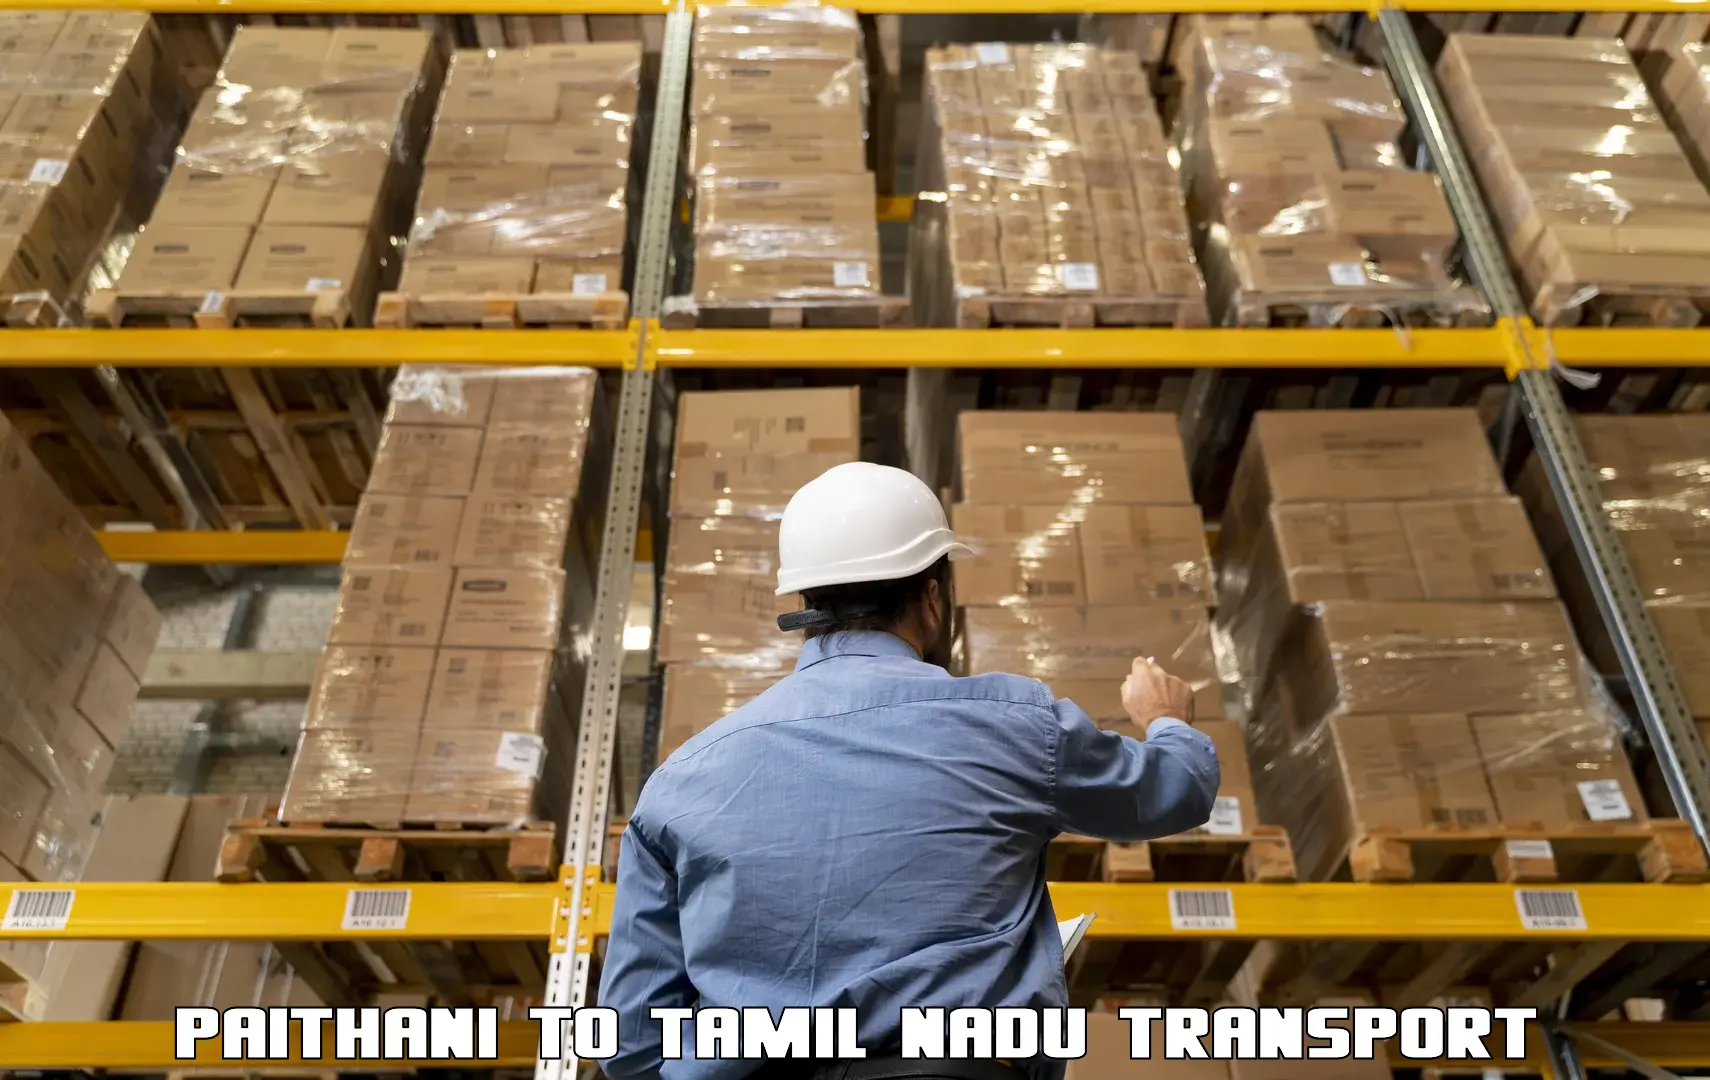 Transportation services Paithani to Chennai